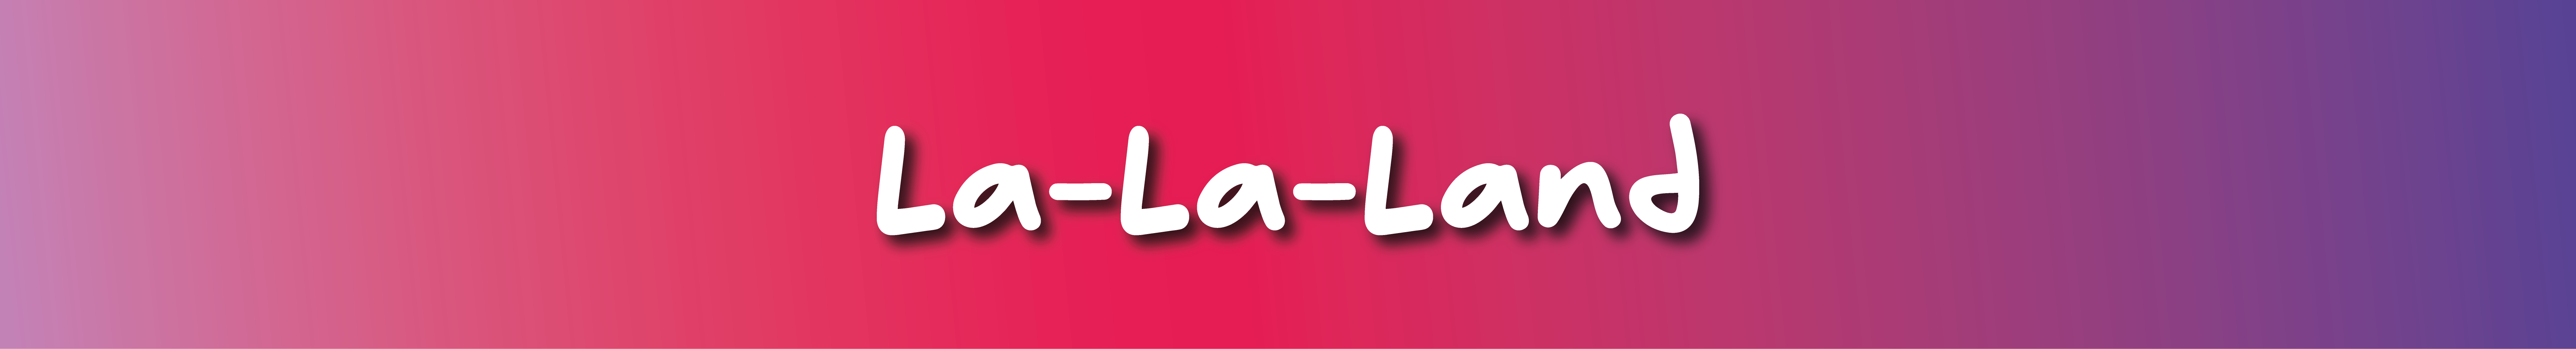 La-La-Land banner